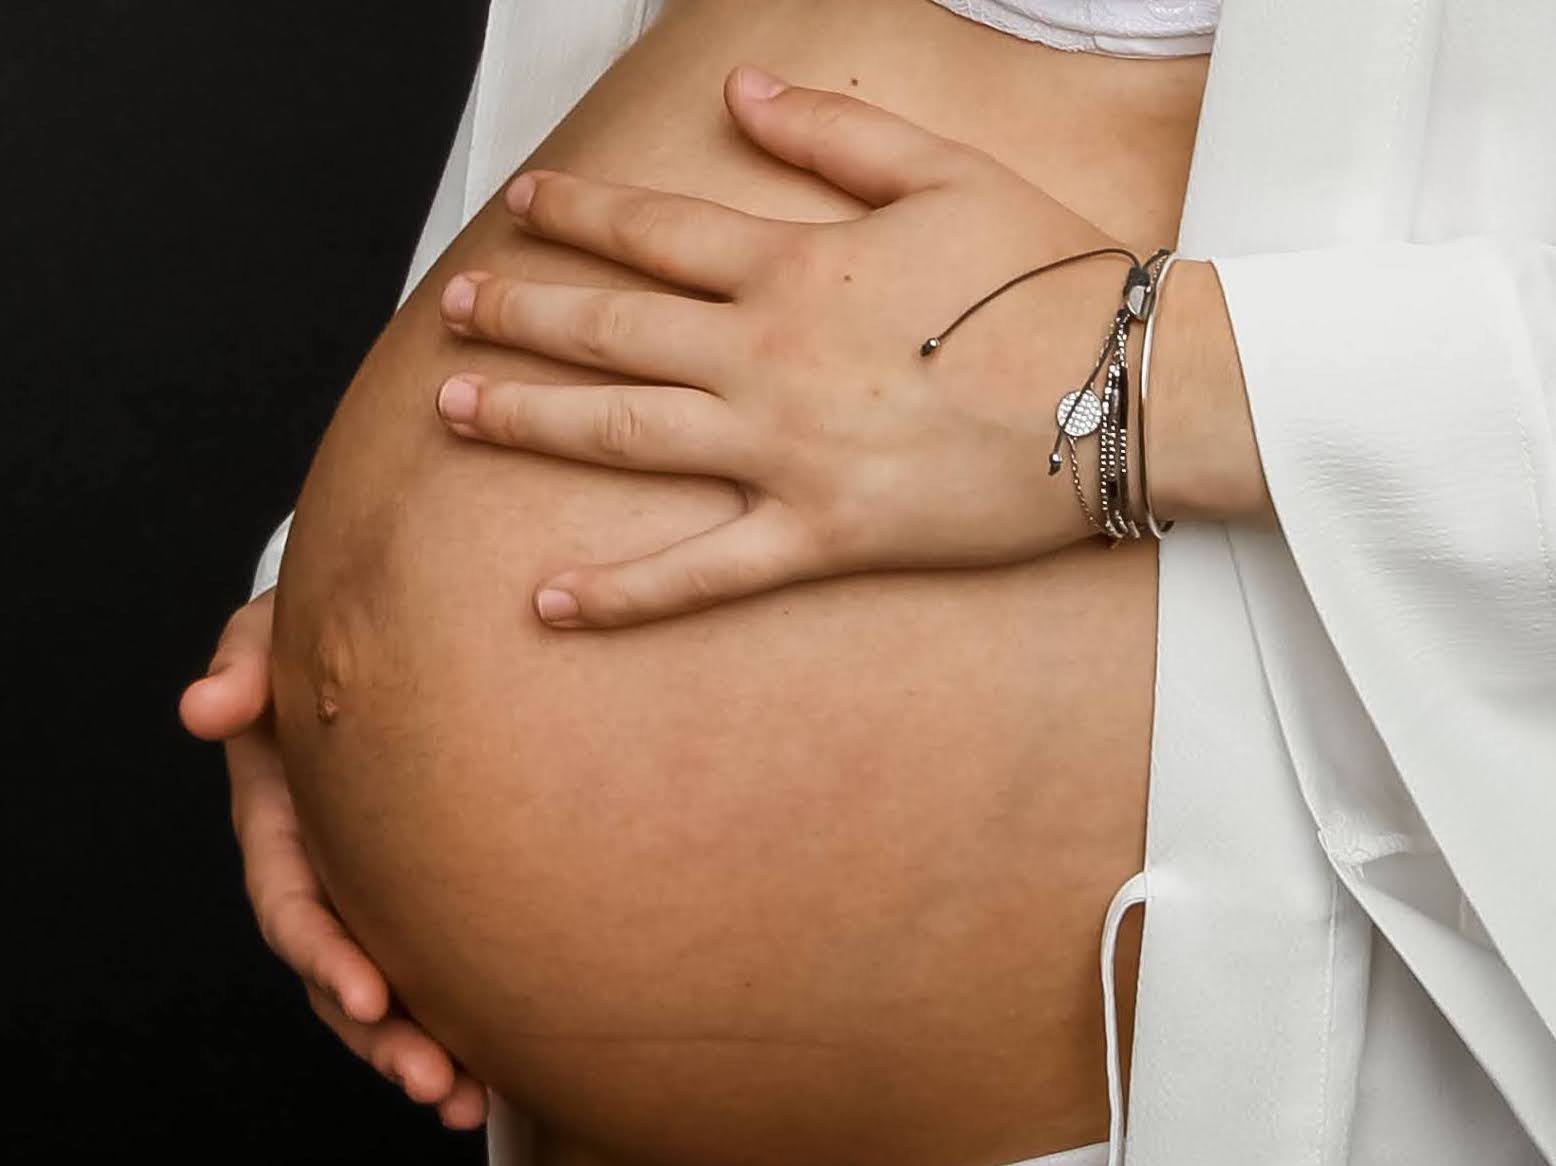 Femme enceinte : les produits recommandés et ceux à éviter